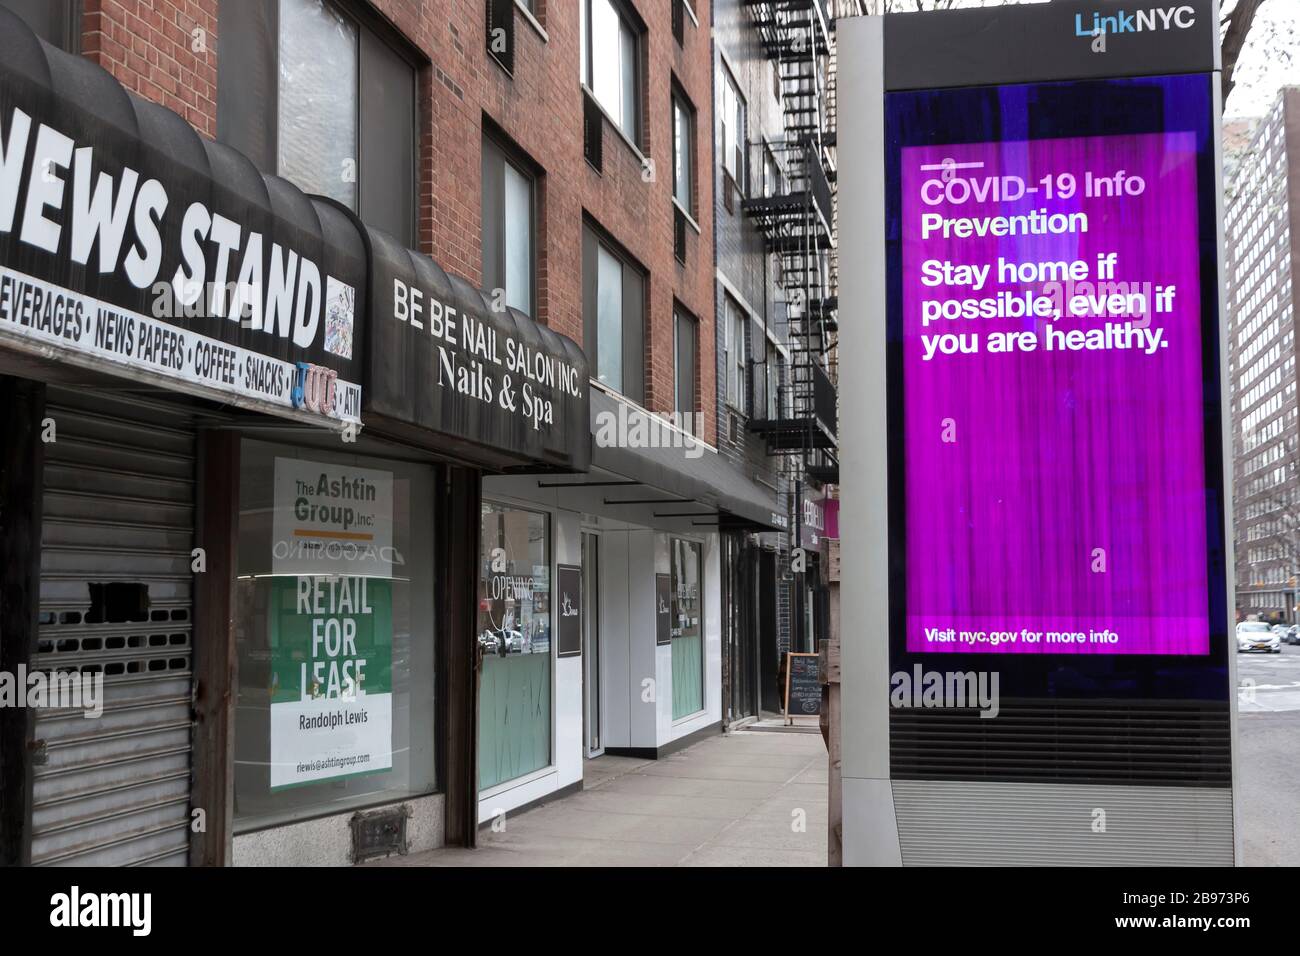 LinkNYC Schild mit digitalem Kiosk auf dem Gehweg, auf dem Covid-19-Nachrichten (Coronavirus) und Ratschläge zur Quarantäne an New Yorker angezeigt werden. Stockfoto